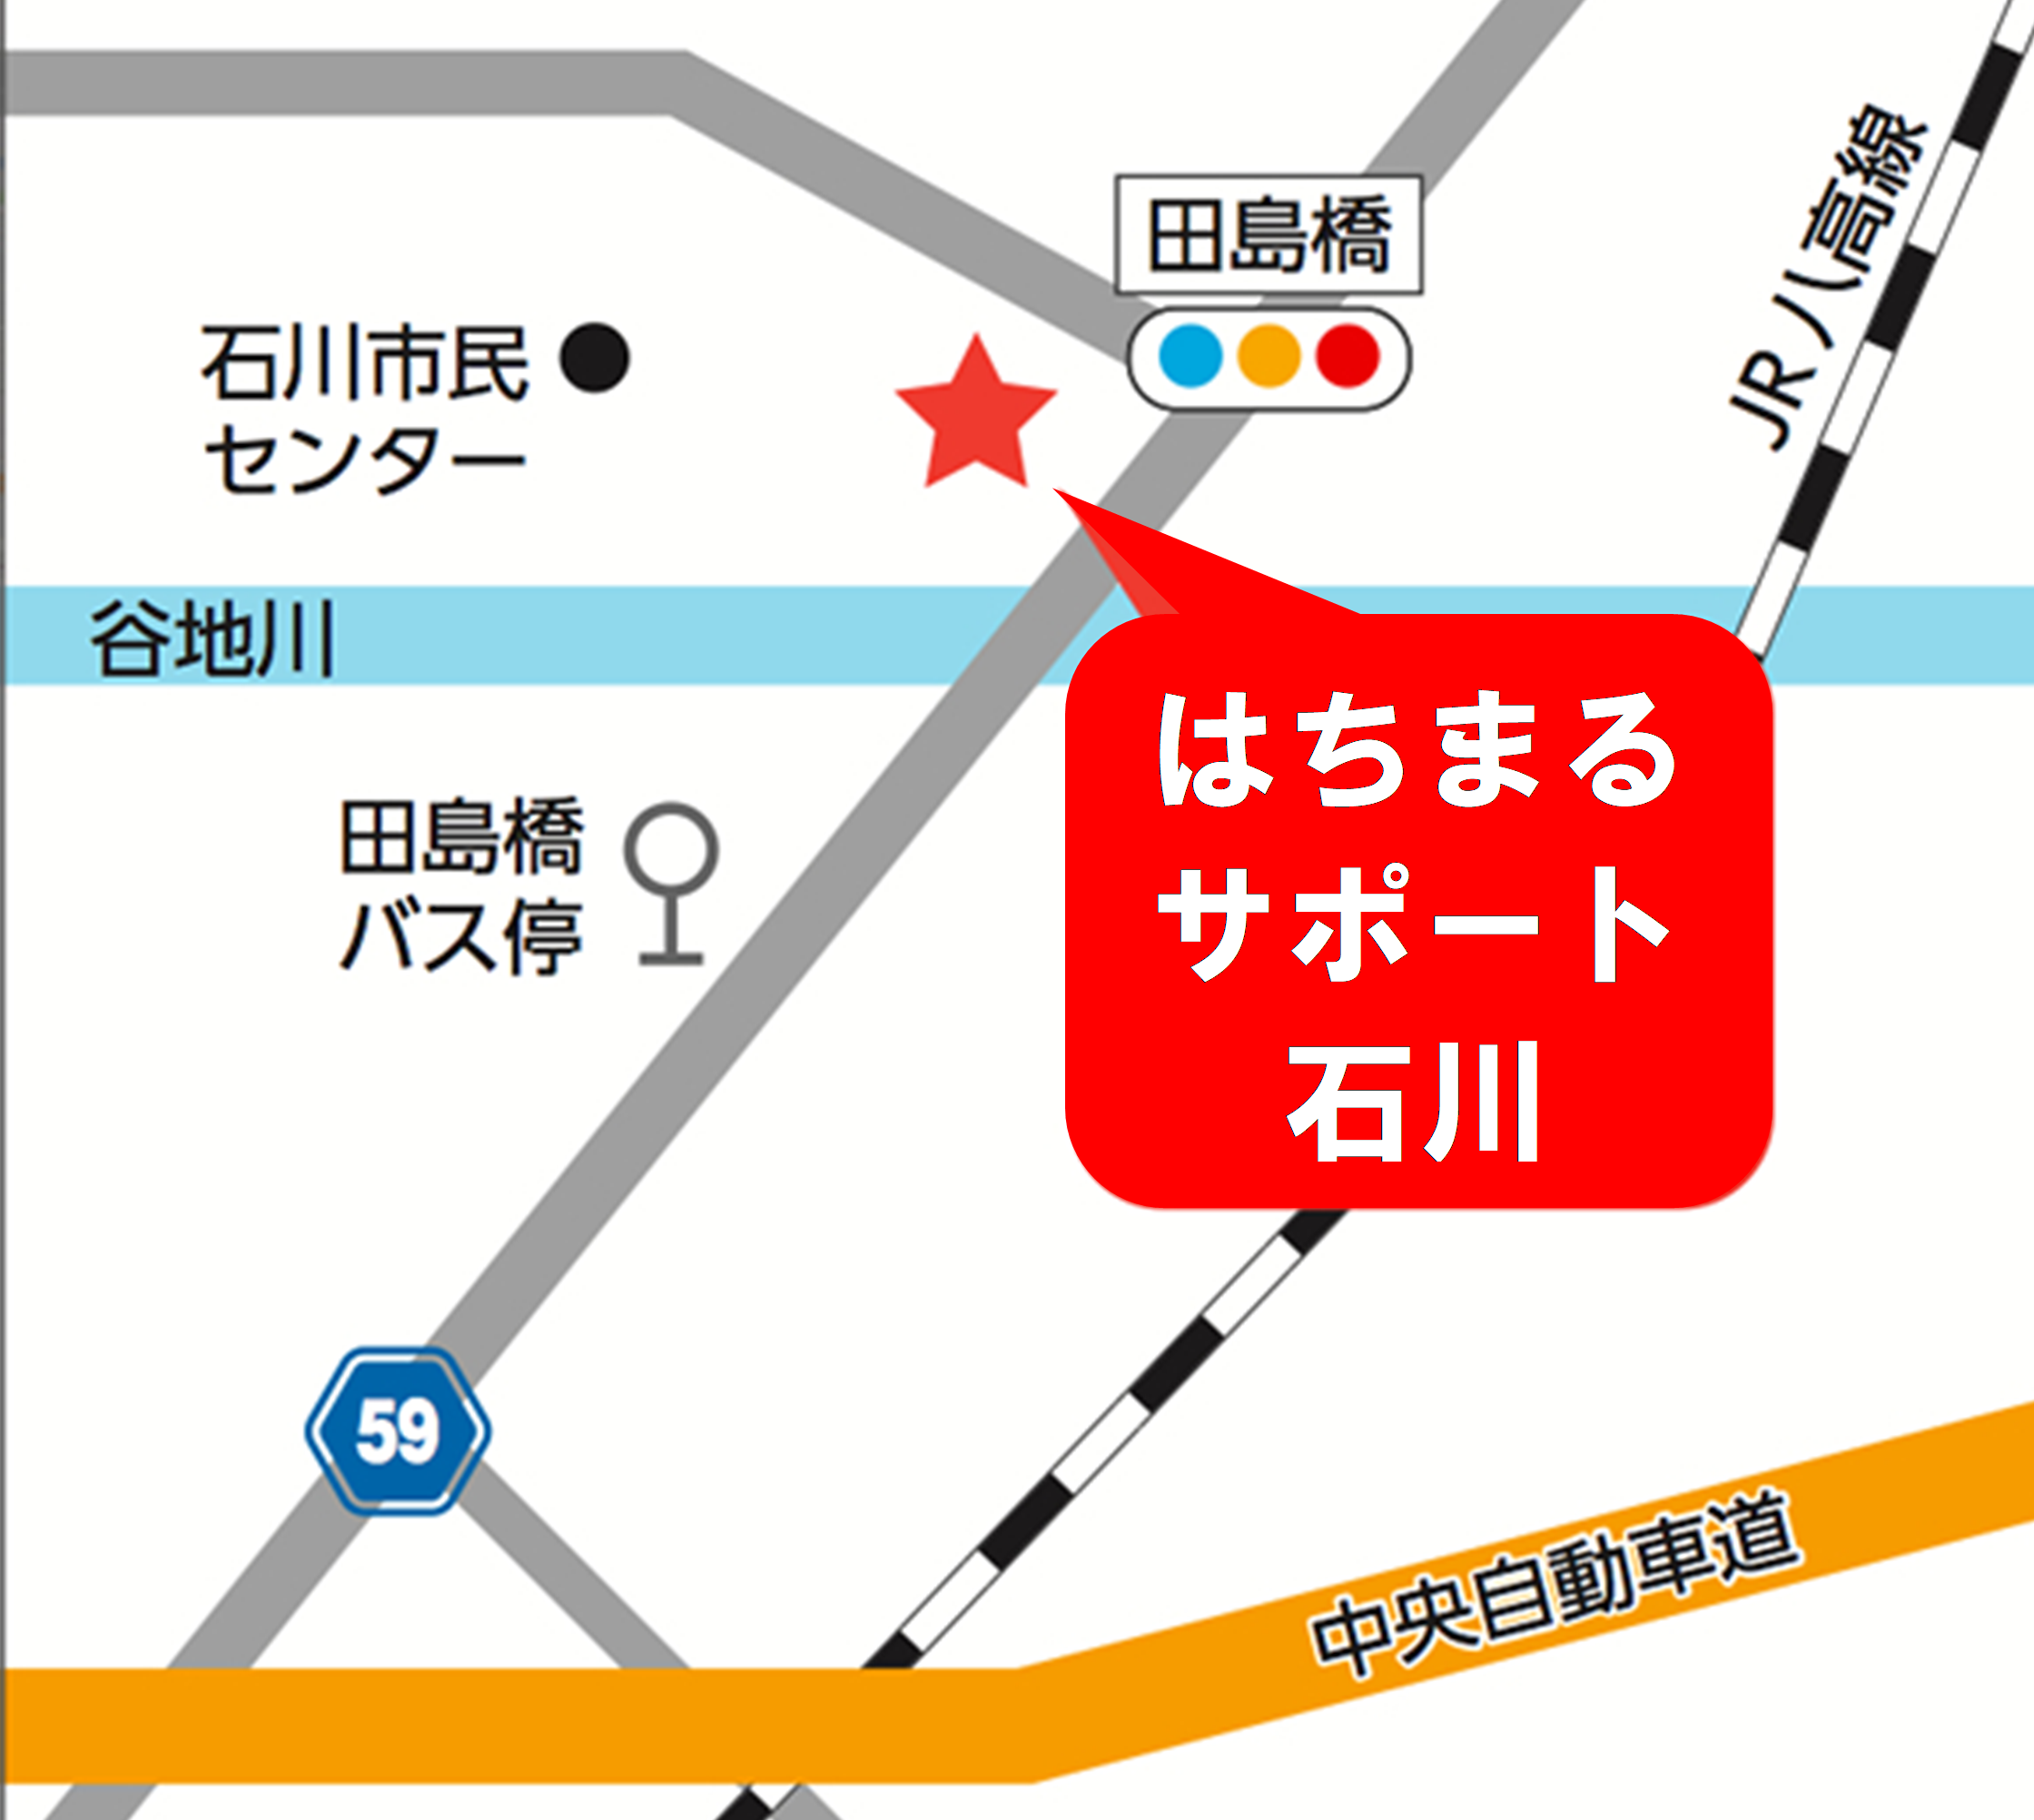 石川事務升2階（八王子まるごとサポートセンター石川）への地図